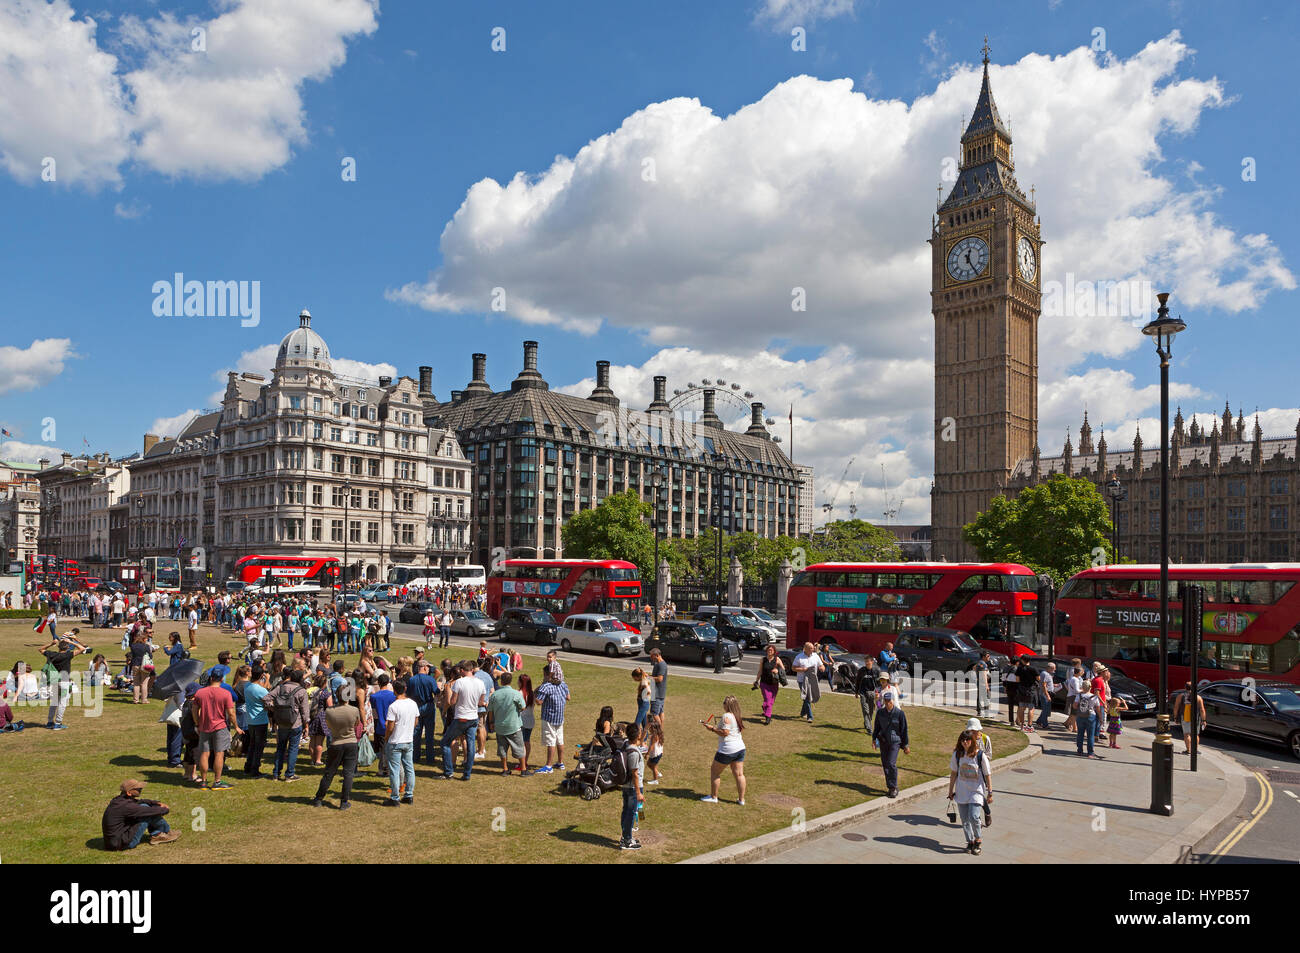 Les gens à la place du Parlement, Big Ben, les Maisons du Parlement, Londres, Angleterre, Grande-Bretagne Banque D'Images